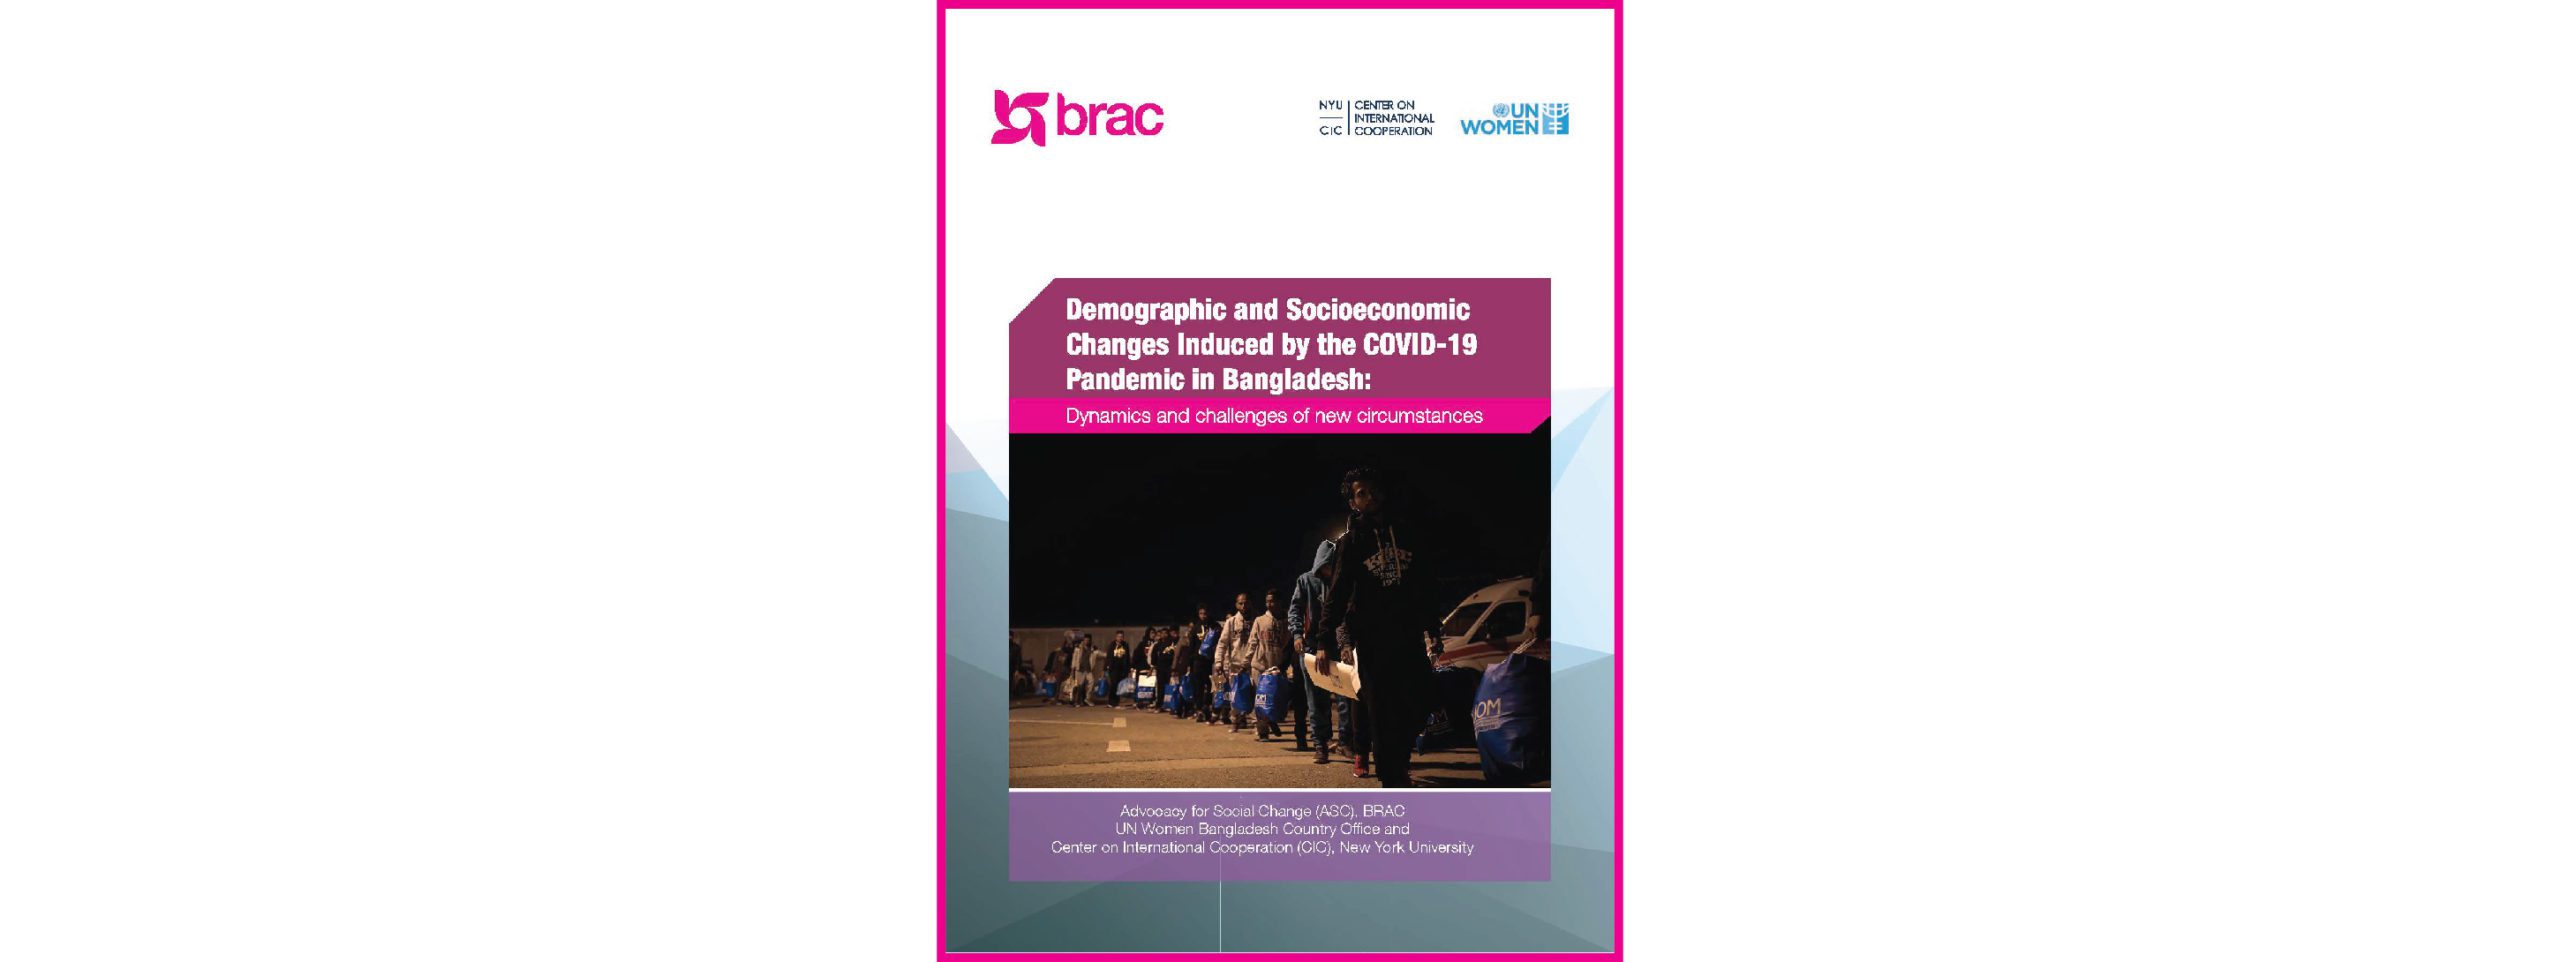 brac report cover